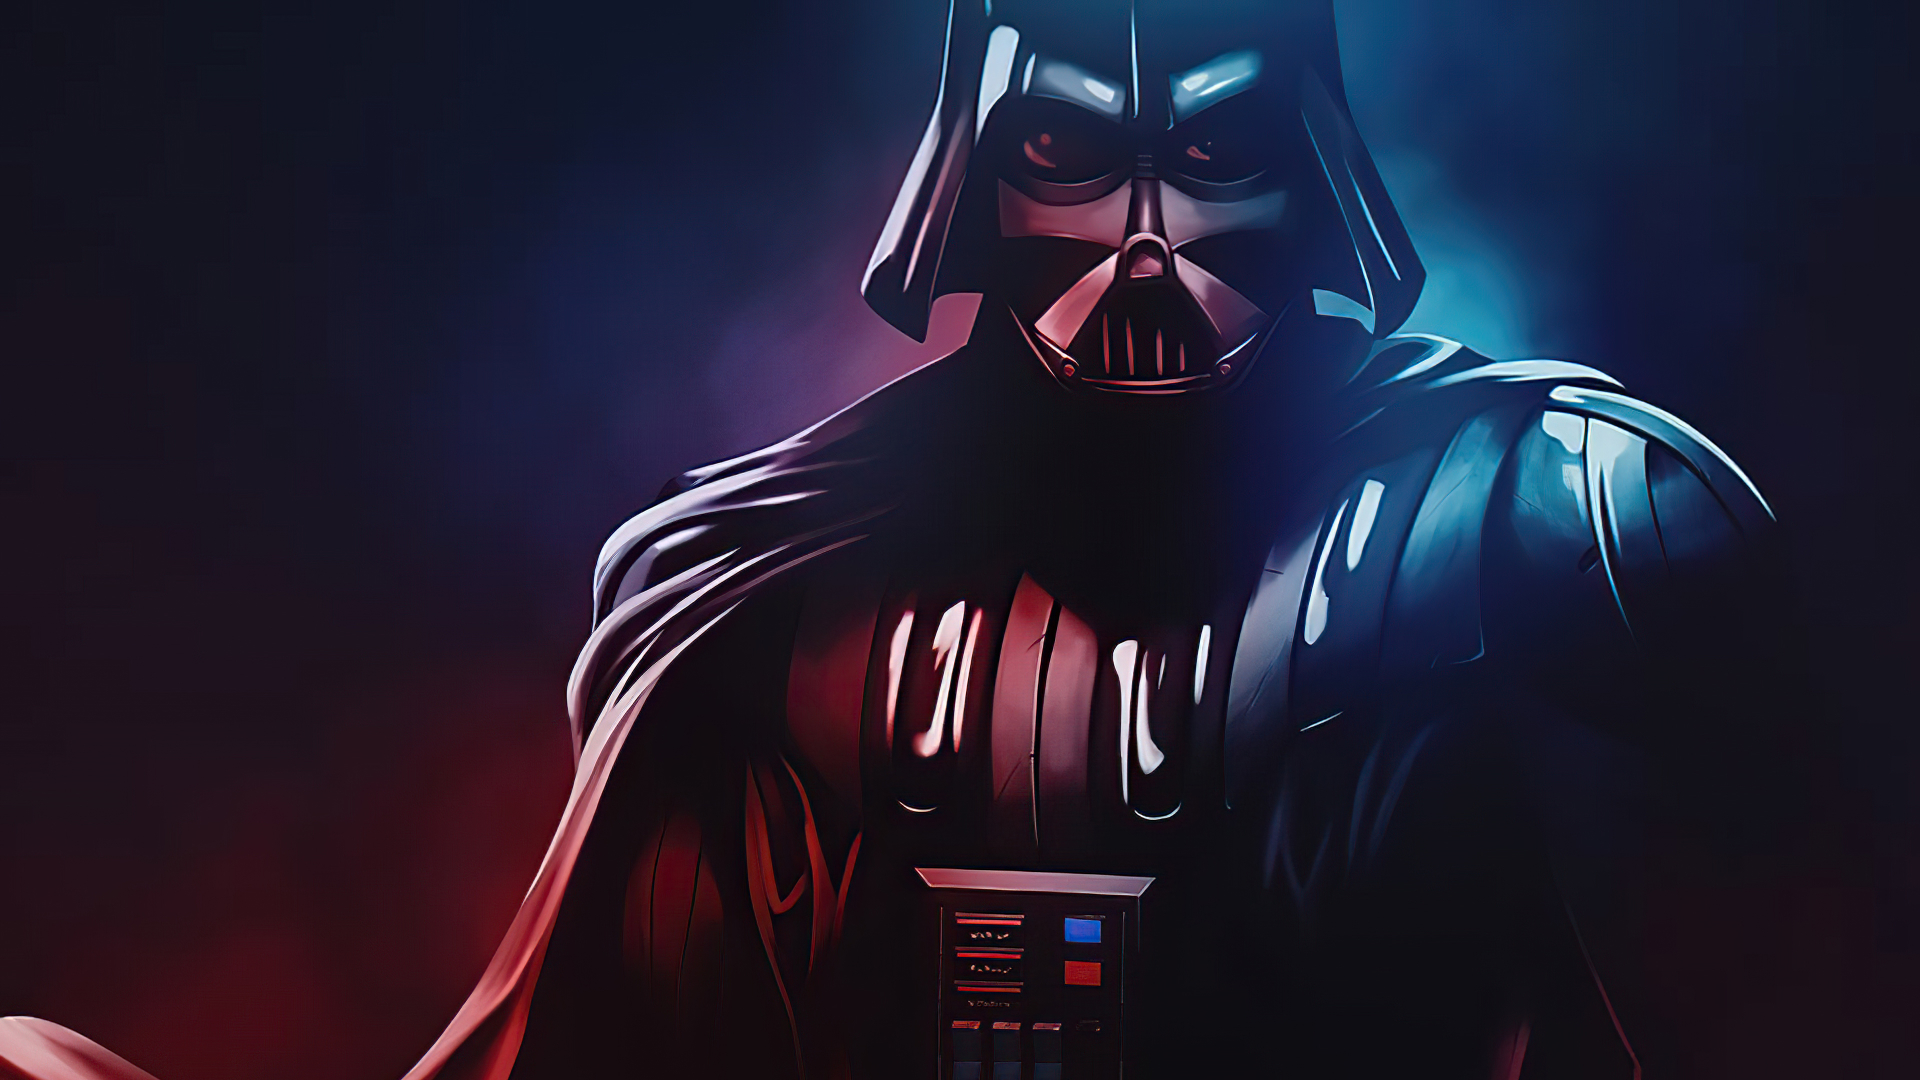 Hd Darth Vader Wallpaper Darth Vader Wallpaper | Wallpaper Spy